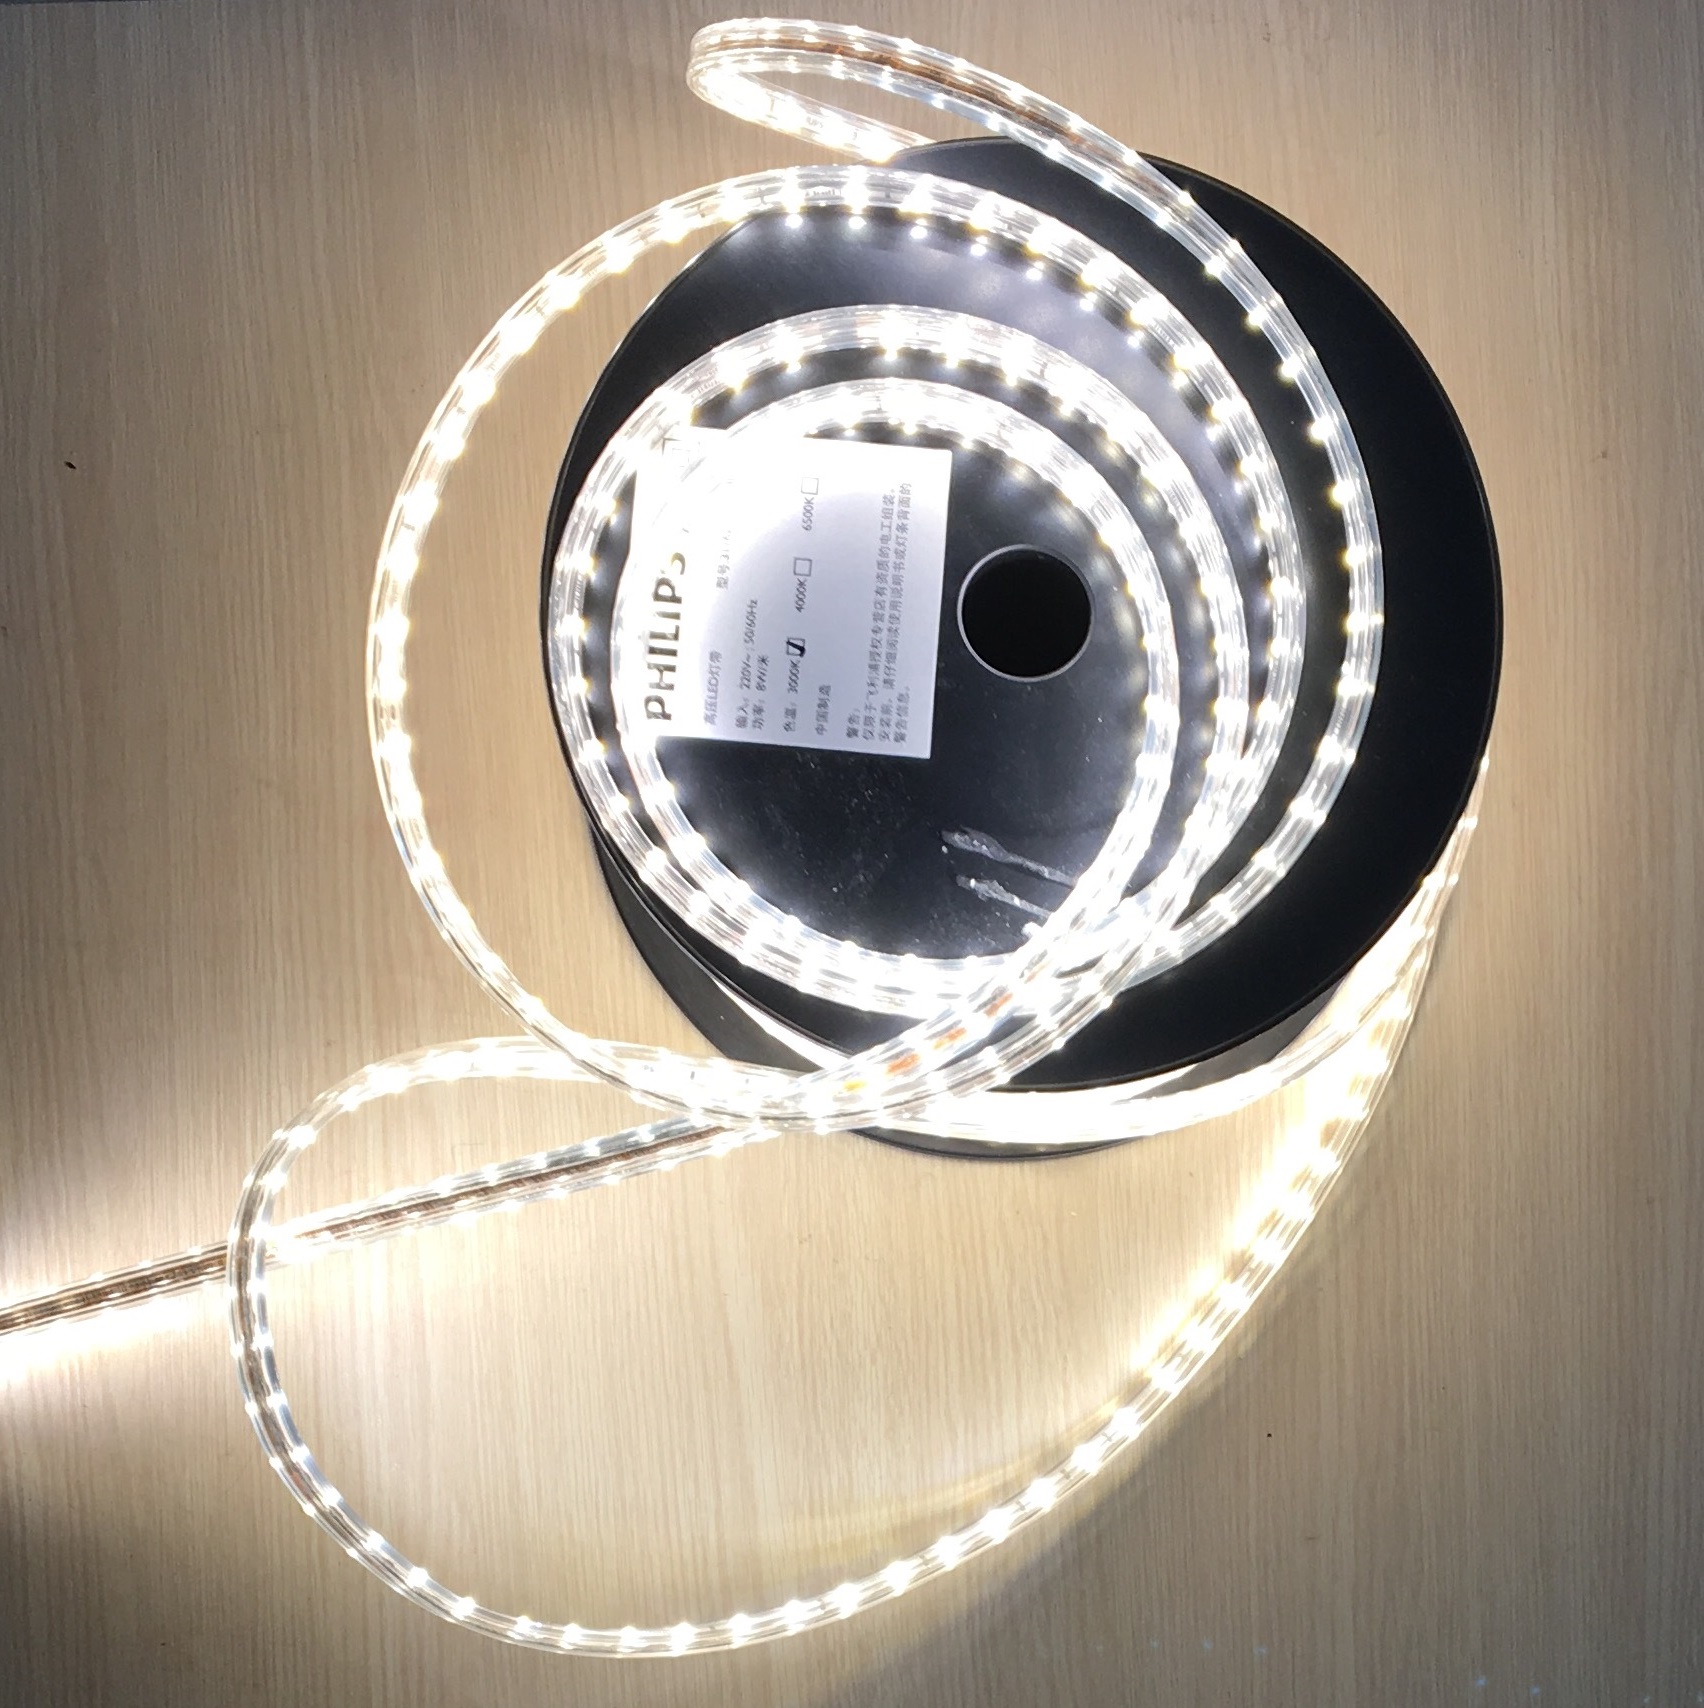 Hãy thưởng thức bầu không khí lãng mạn với đèn led dây hắt trần Philips. Với công nghệ tiên tiến và thiết kế tinh tế, đèn led dây hắt trần Philips sẽ mang đến cho không gian của bạn một vẻ đẹp hiện đại và sang trọng. Hãy cùng khám phá hình ảnh về sản phẩm này để cảm nhận sự độc đáo và tiện nghi của đèn led dây Philips.